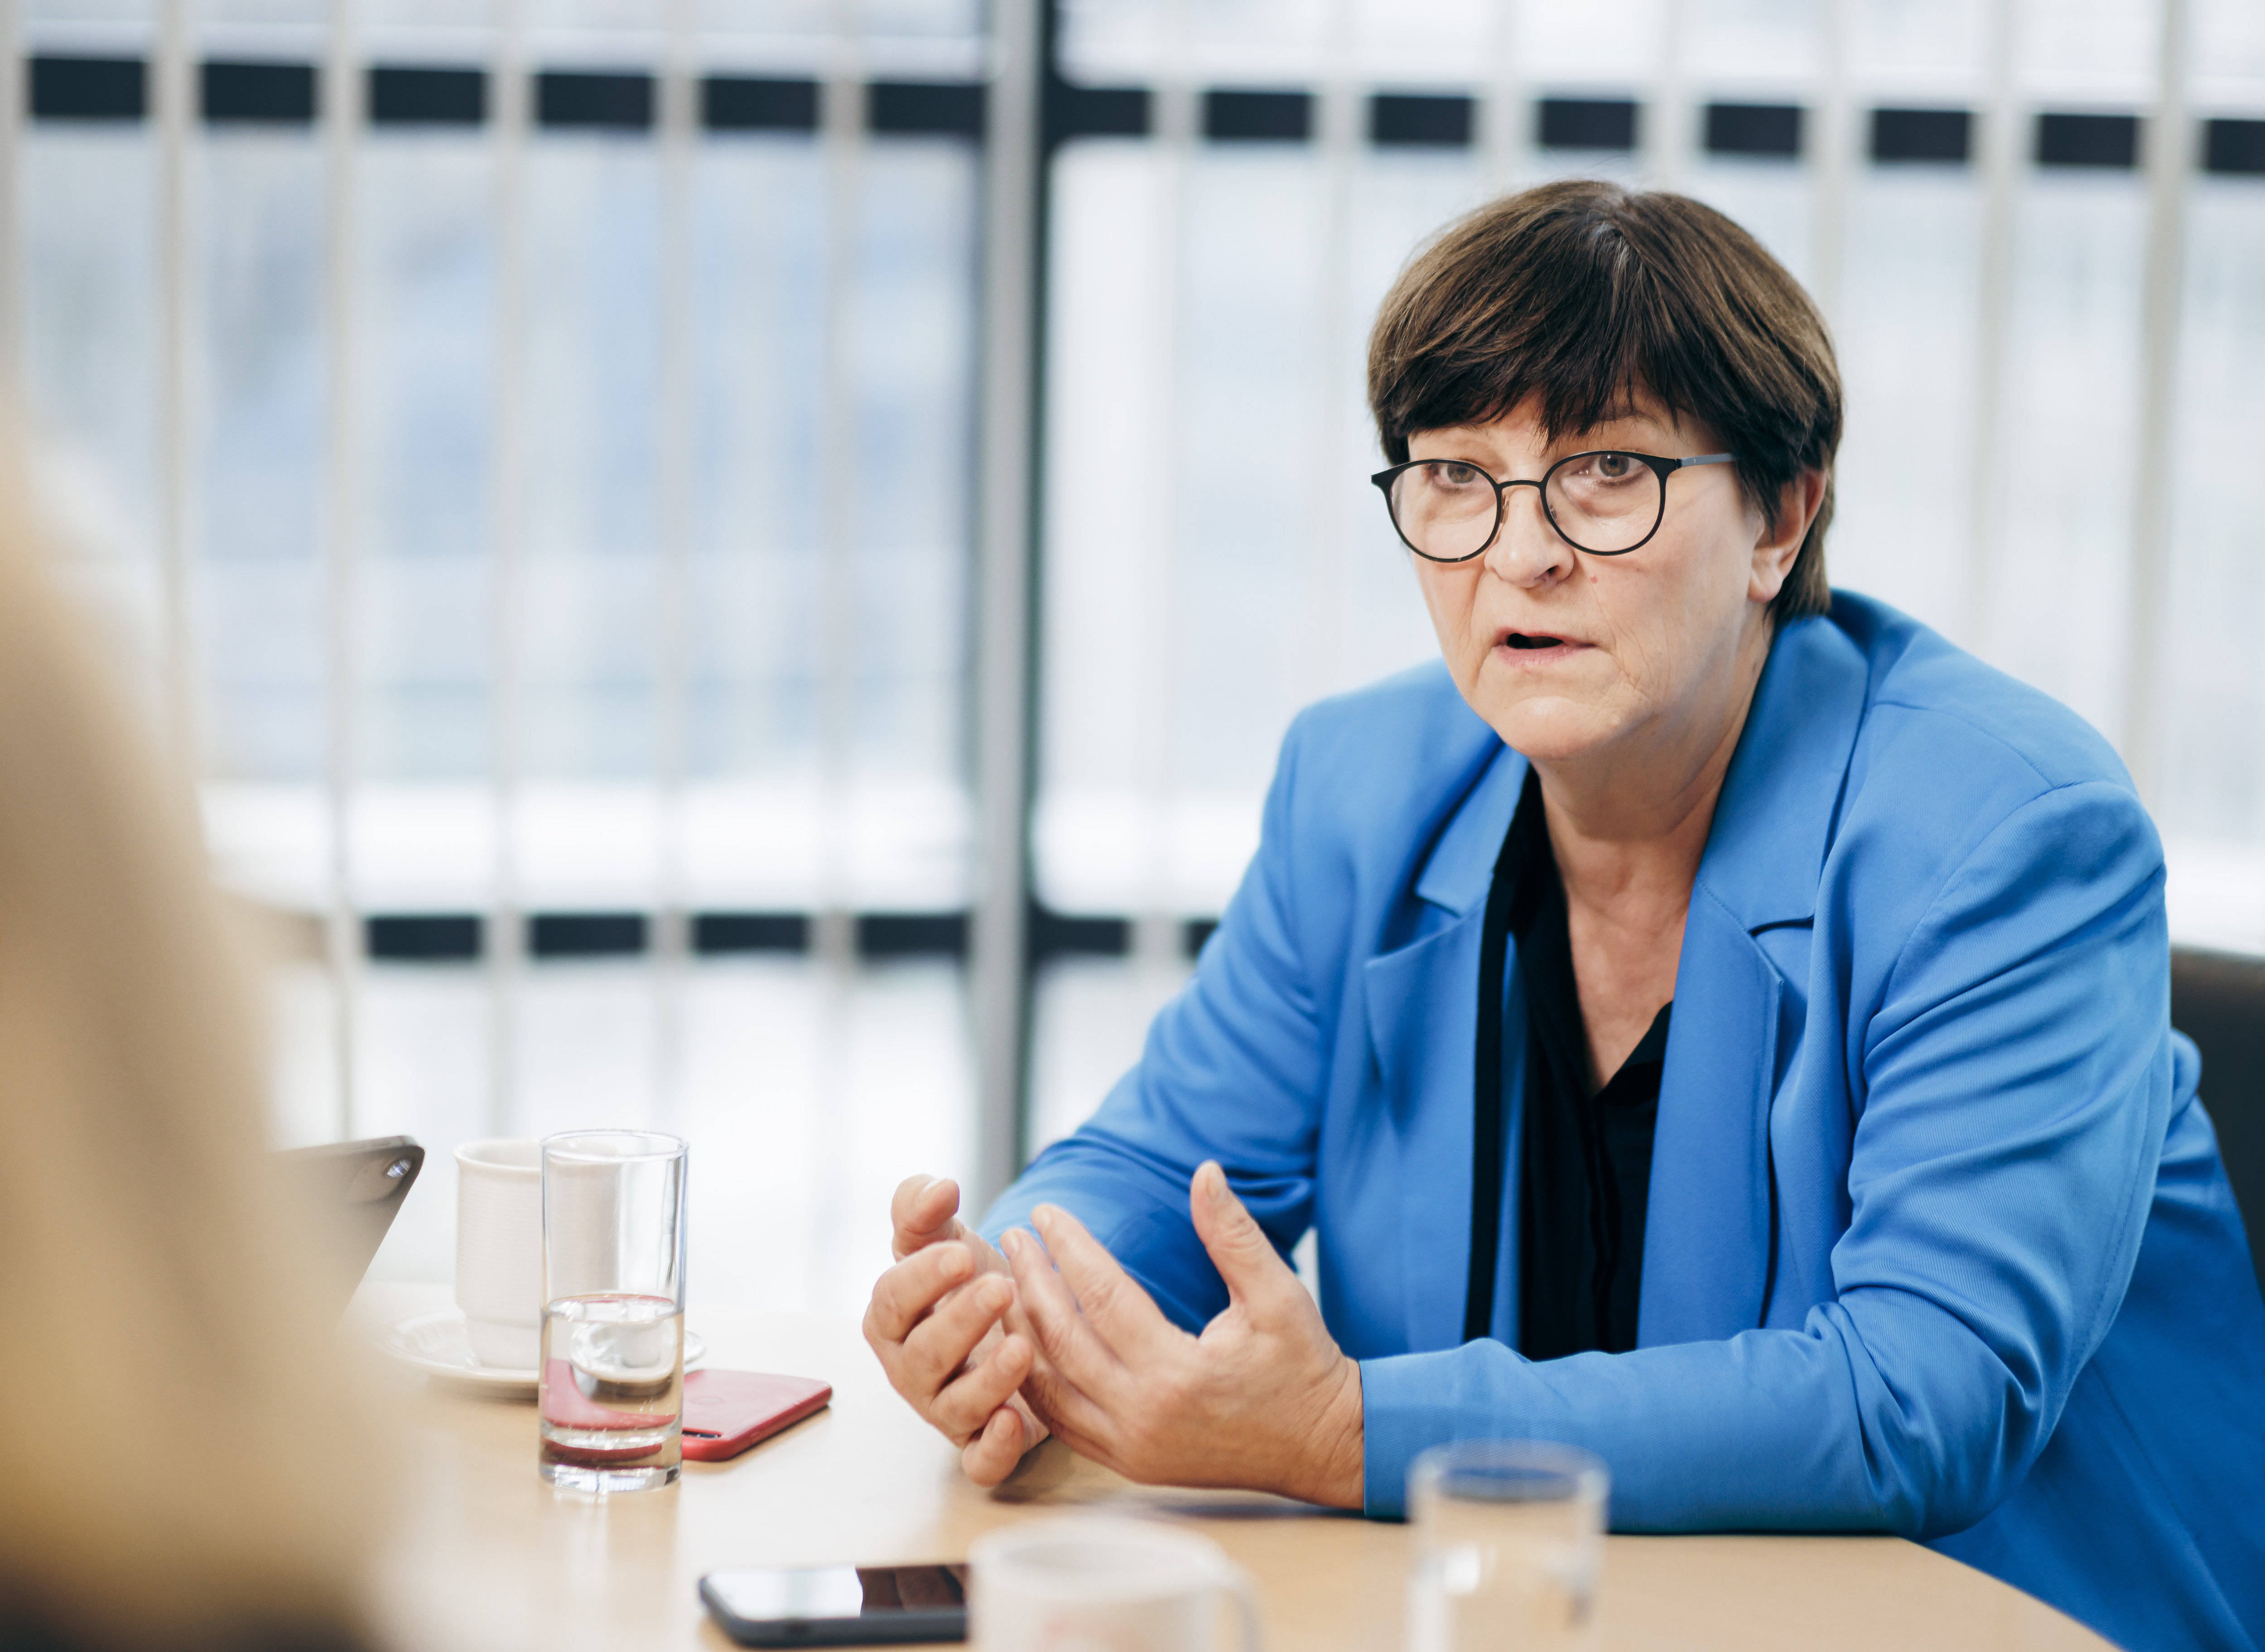 SPD-Chefin Saskia Esken: Wir Demokrat*innen müssen eine Antwort finden auf die grundlegende Unsicherheit, die in unserer Gesellschaft herrscht.